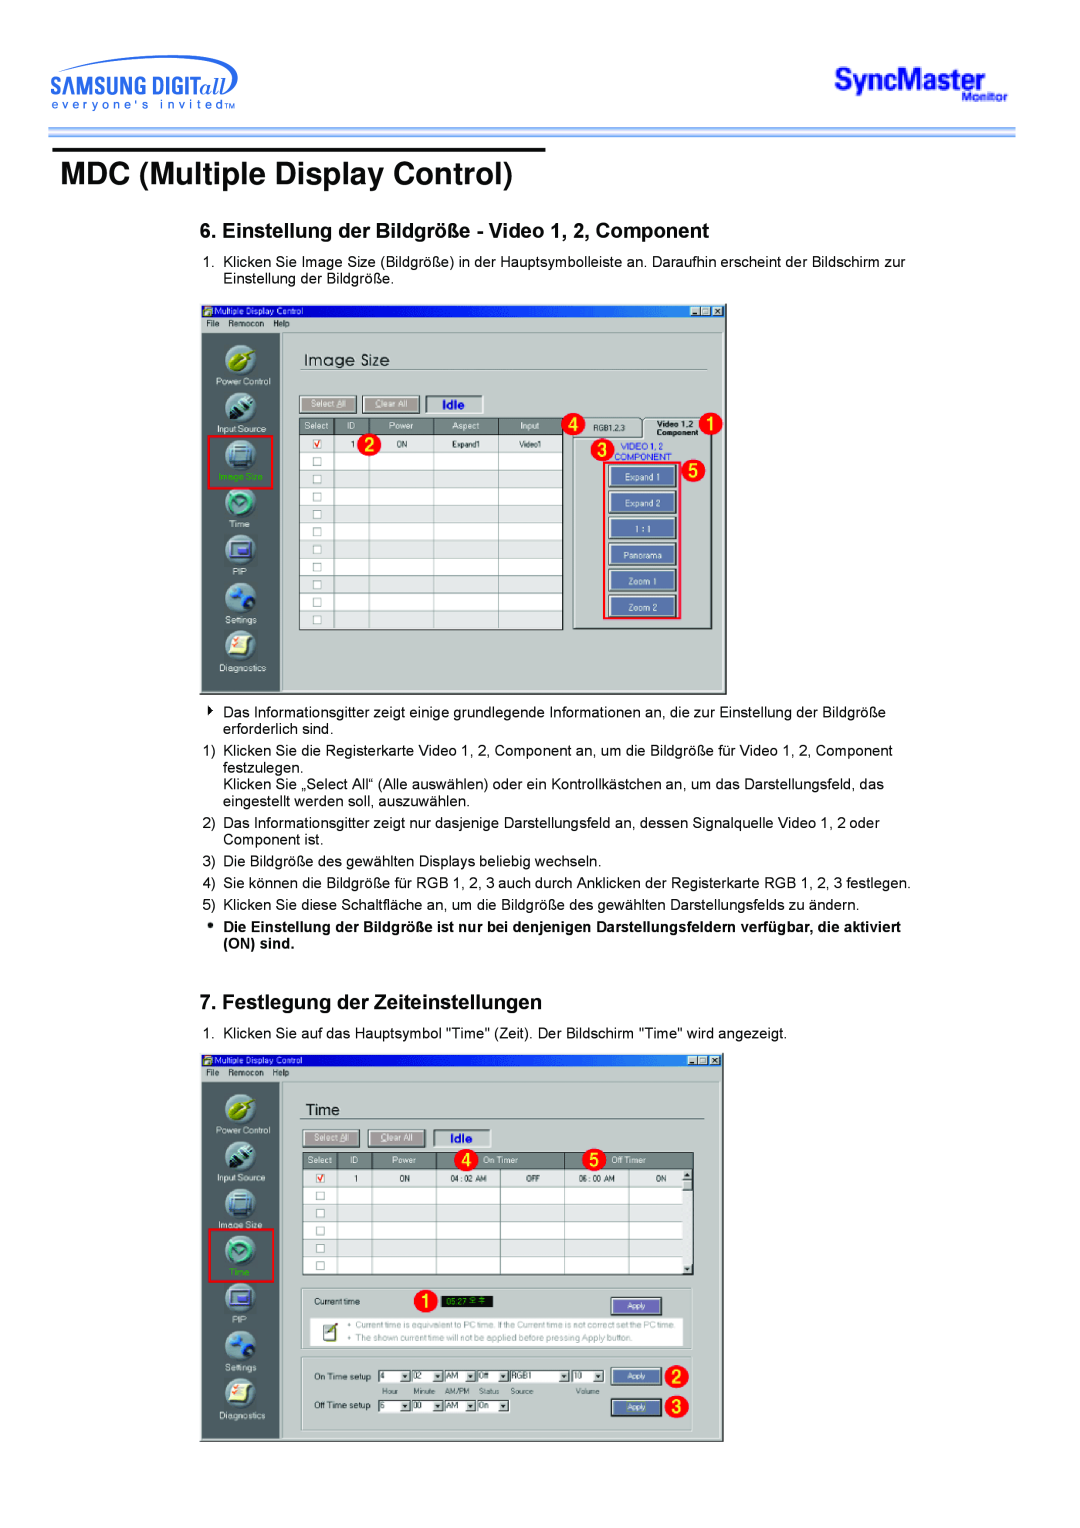 Samsung CK40PSNSG/EDC, CK40PSNB/EDC Einstellung der Bildgröße - Video 1, 2, Component, Festlegung der Zeiteinstellungen 